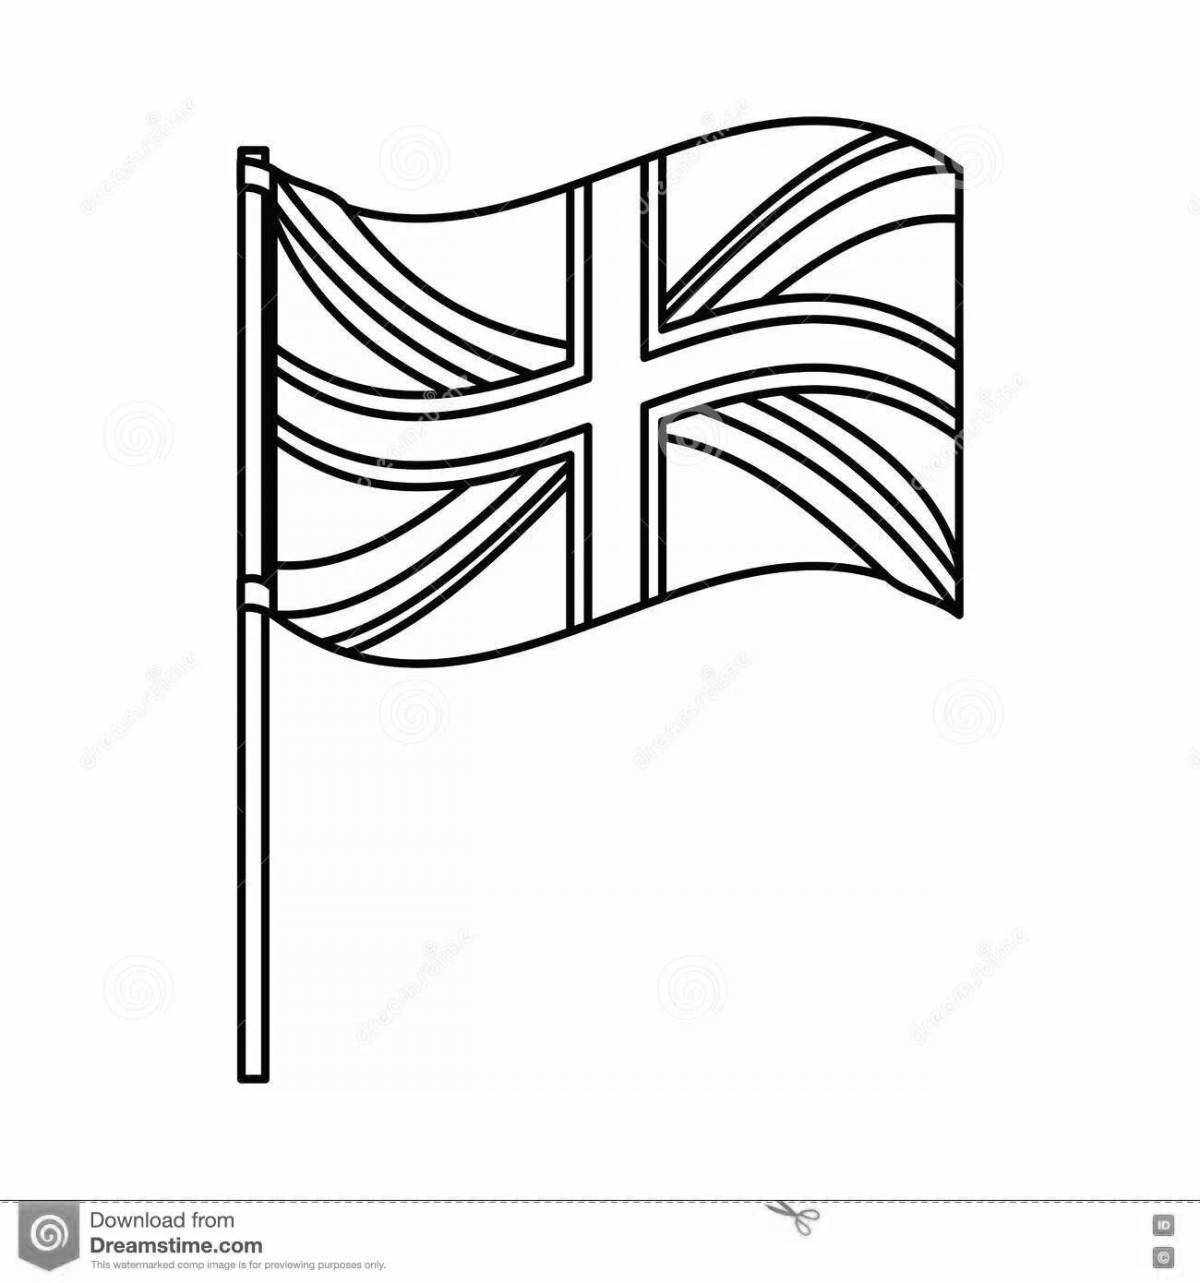 Впечатляющая раскраска британского флага